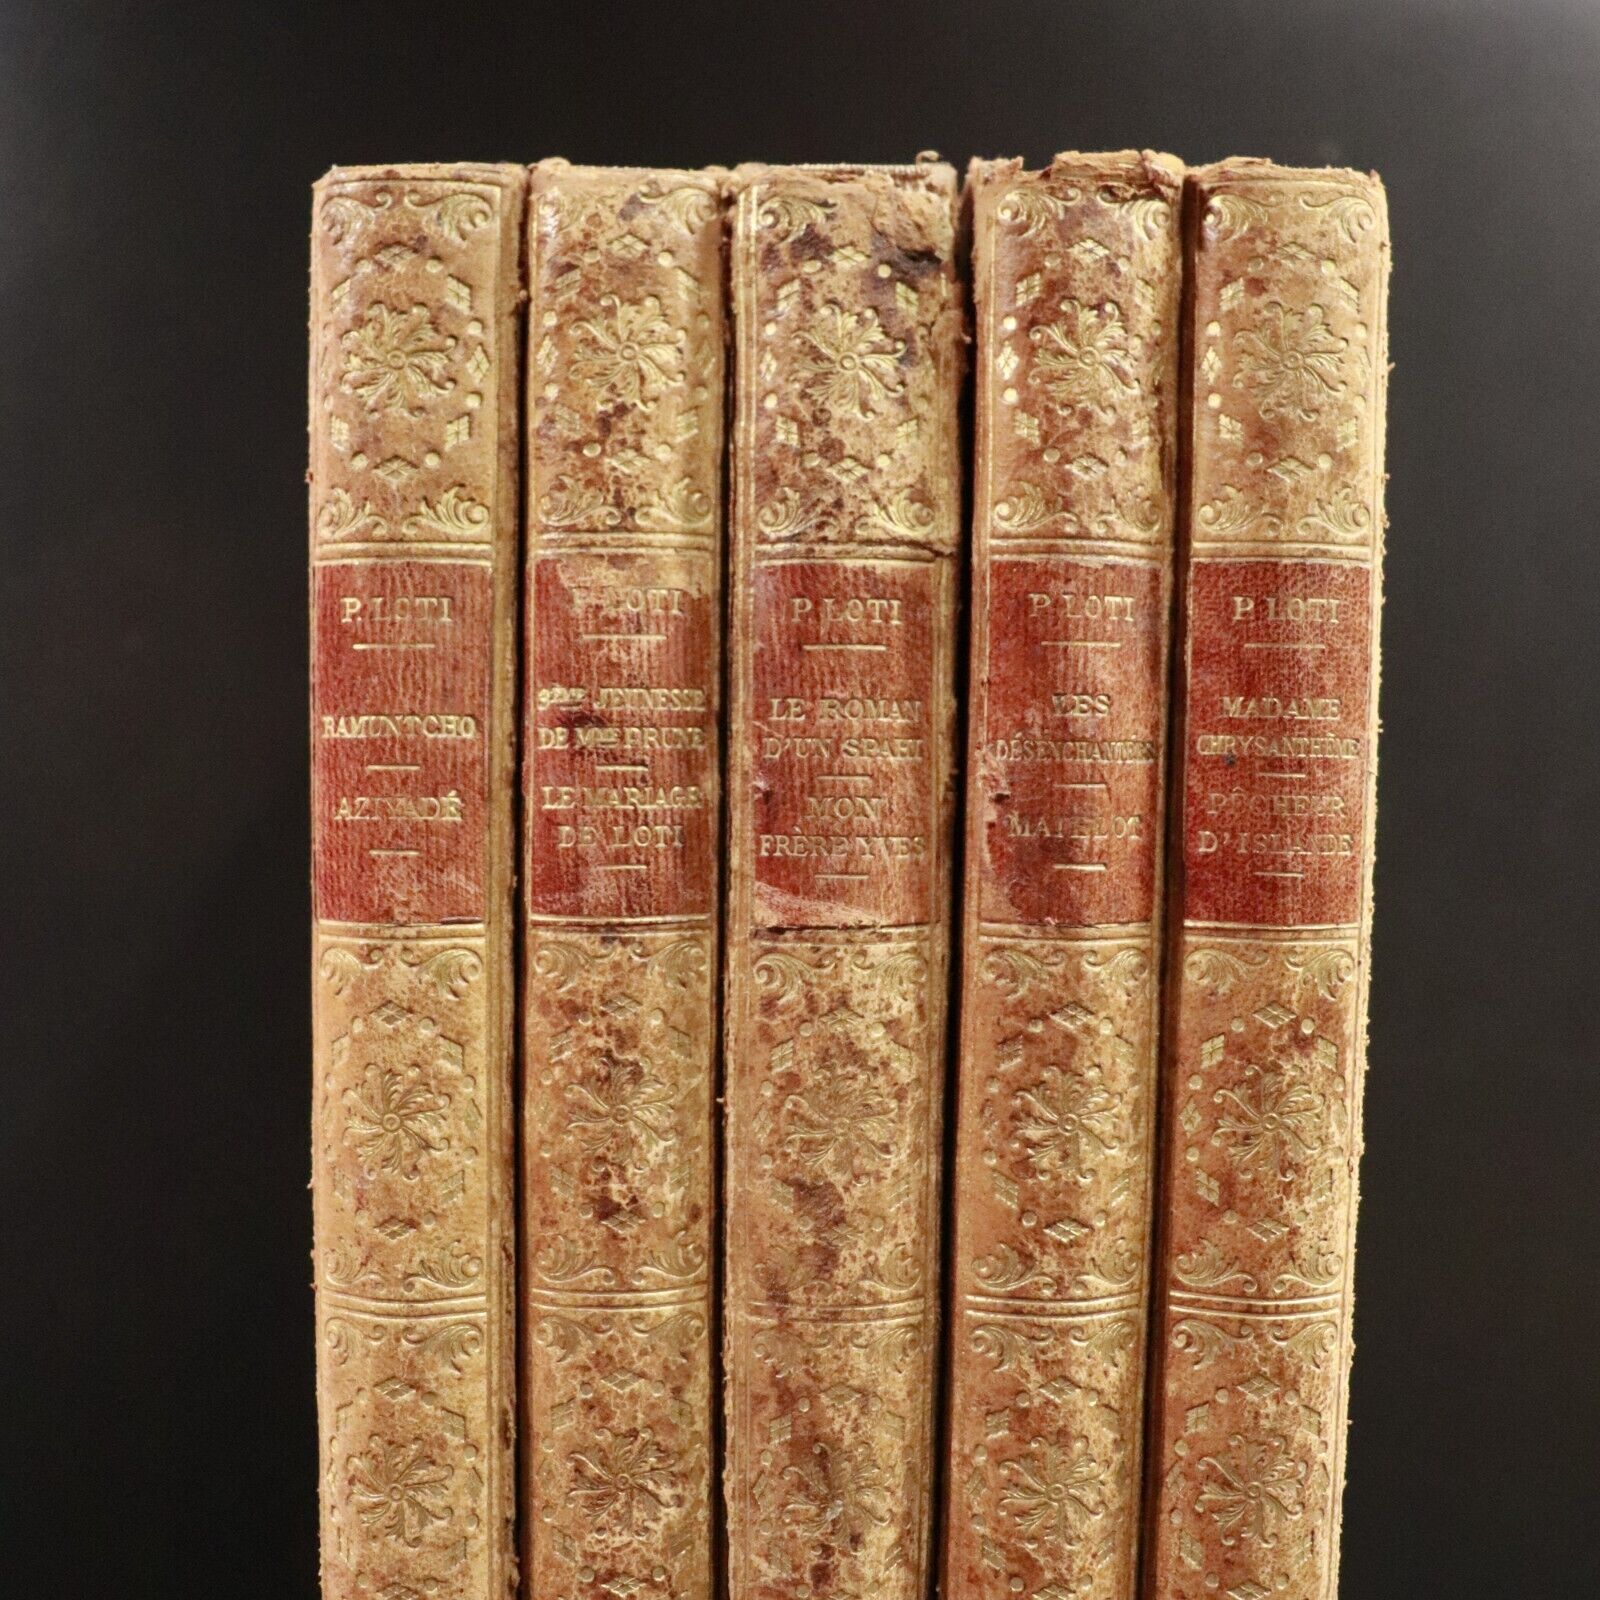 1923 5vol Romans Complets Illustres De Pierre Loti Antique French Fiction Books